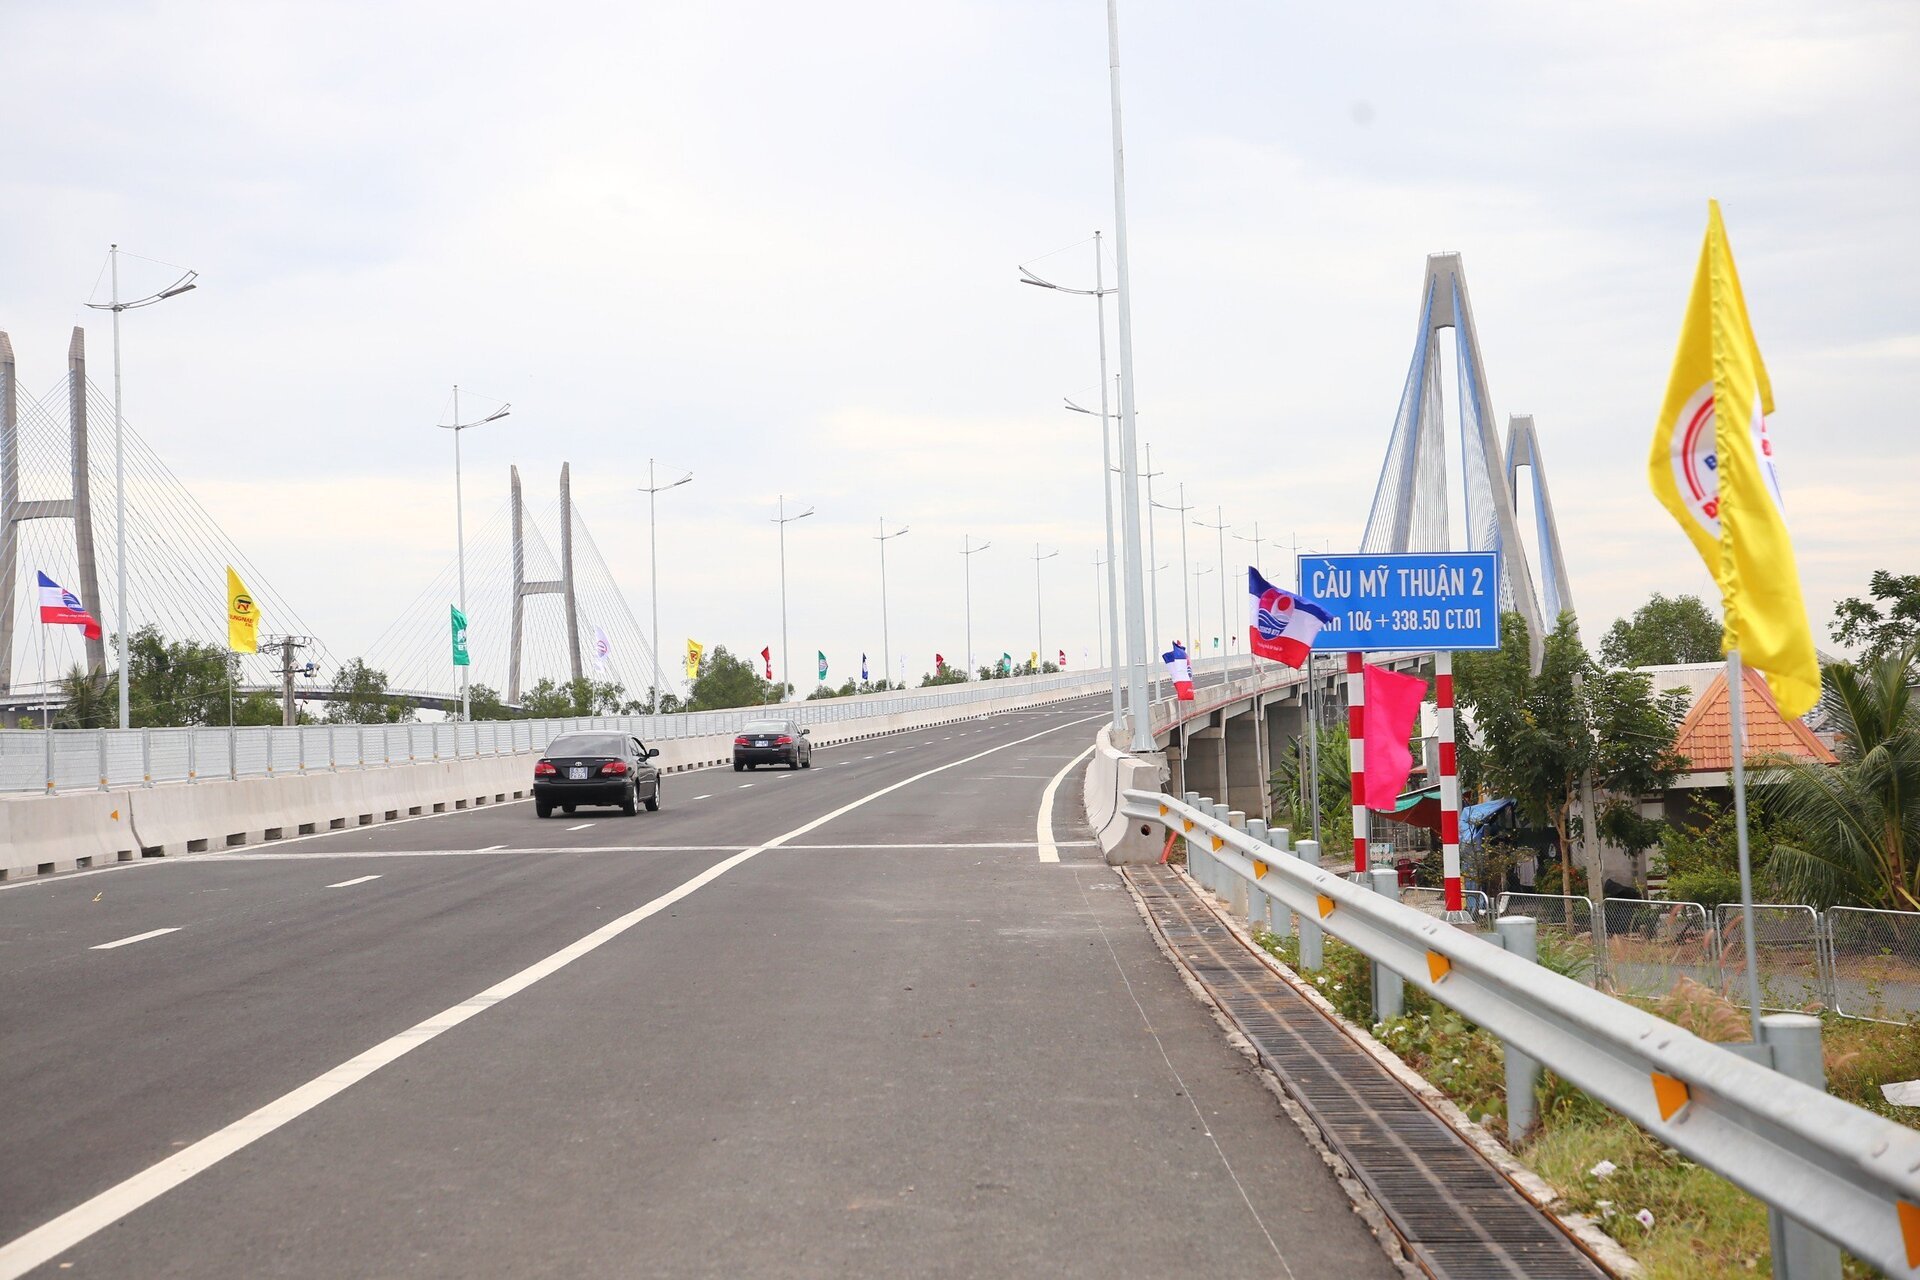 Dự án cầu Mỹ Thuận 2 có điểm đầu kết nối với dự án đường cao tốc Trung Lương - Mỹ Thuận, điểm cuối tại khớp nối với dự án đường cao tốc Mỹ Thuận - Cần Thơ.